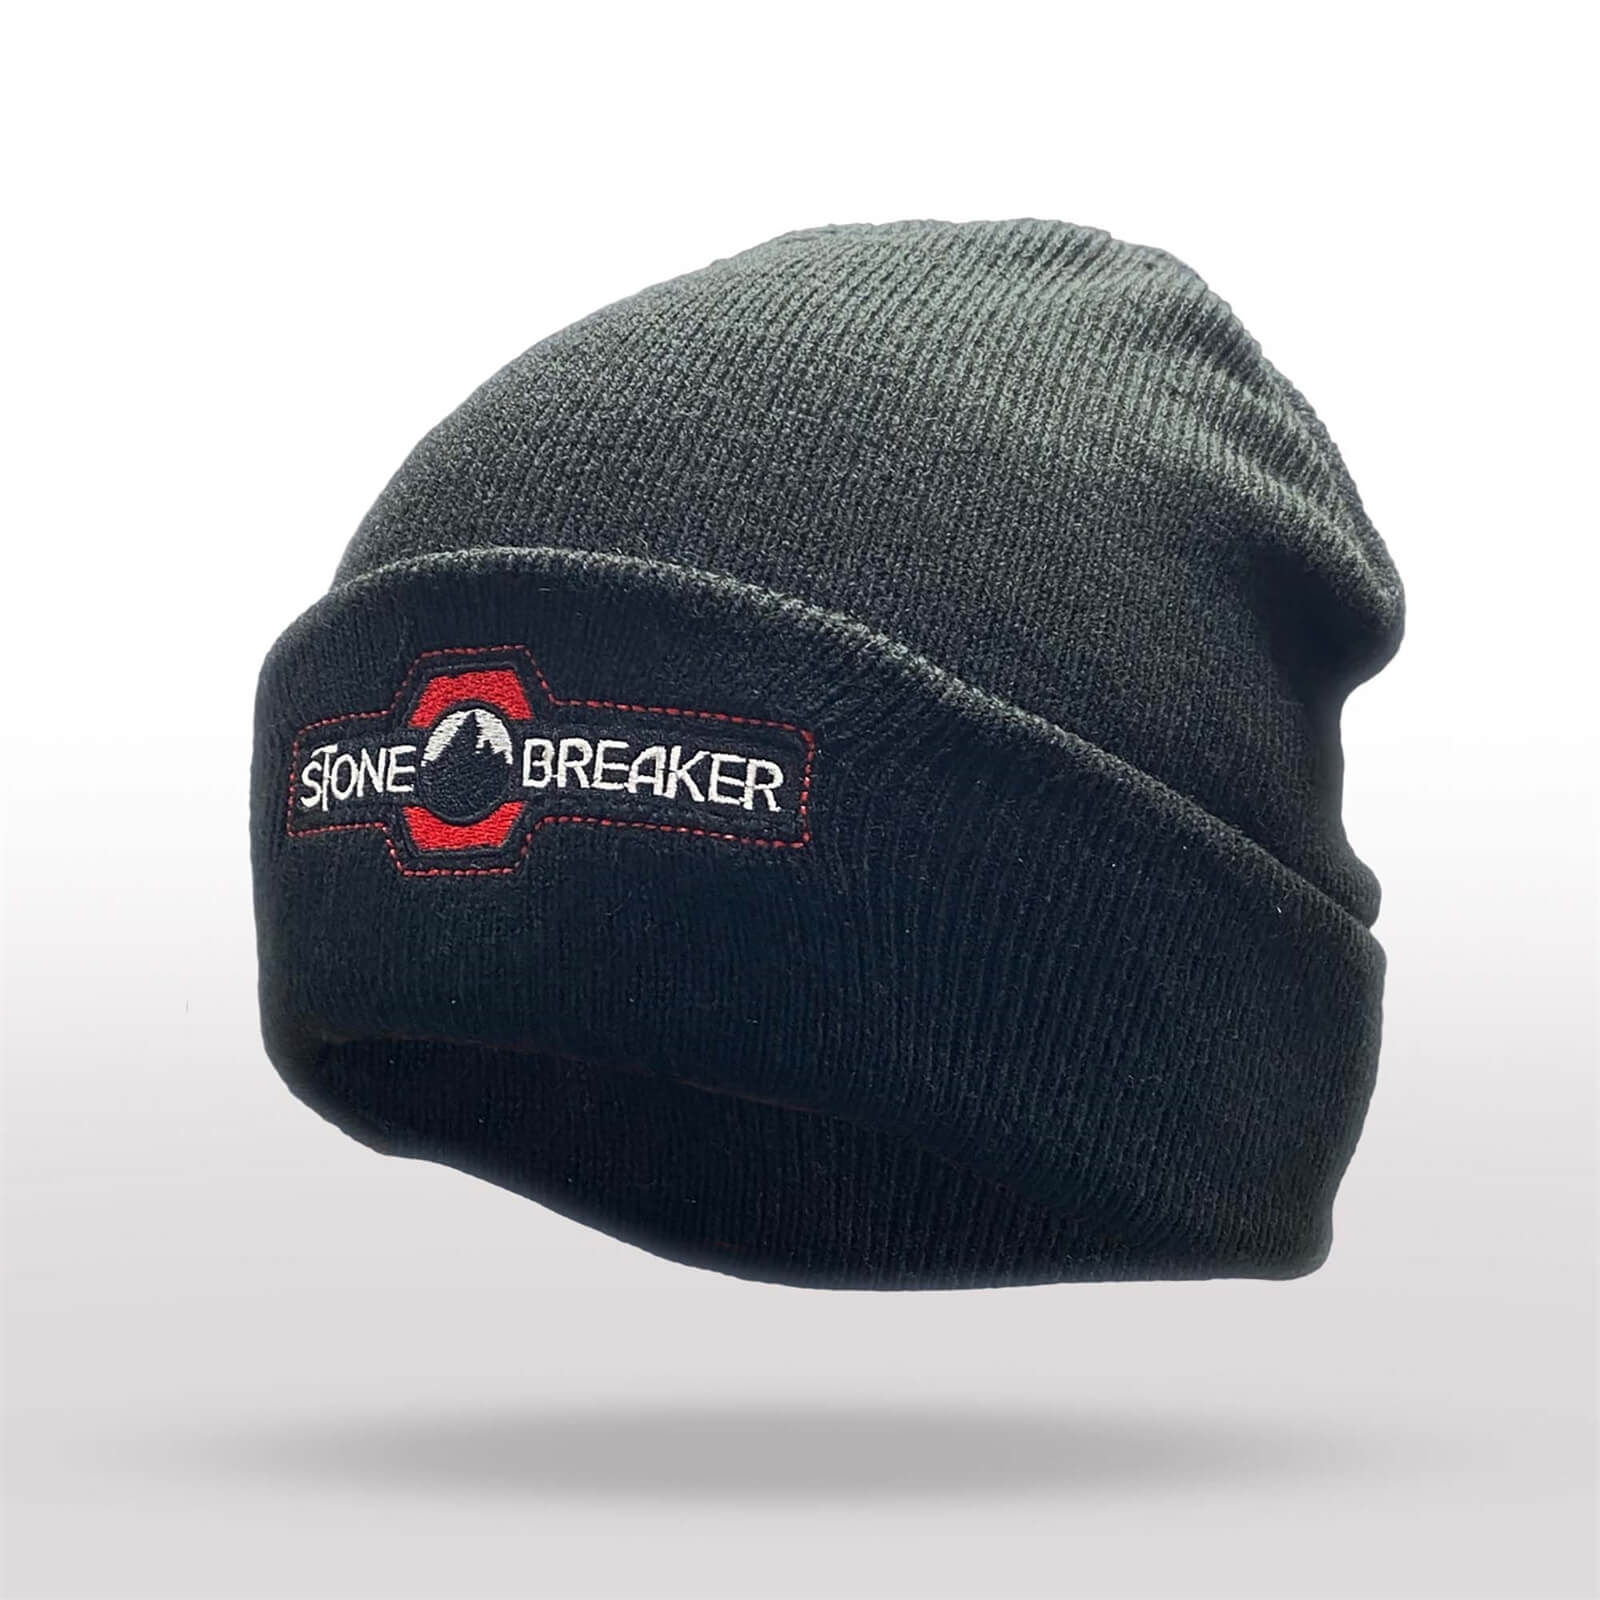 StoneBreaker Knit Winter Hat - Black